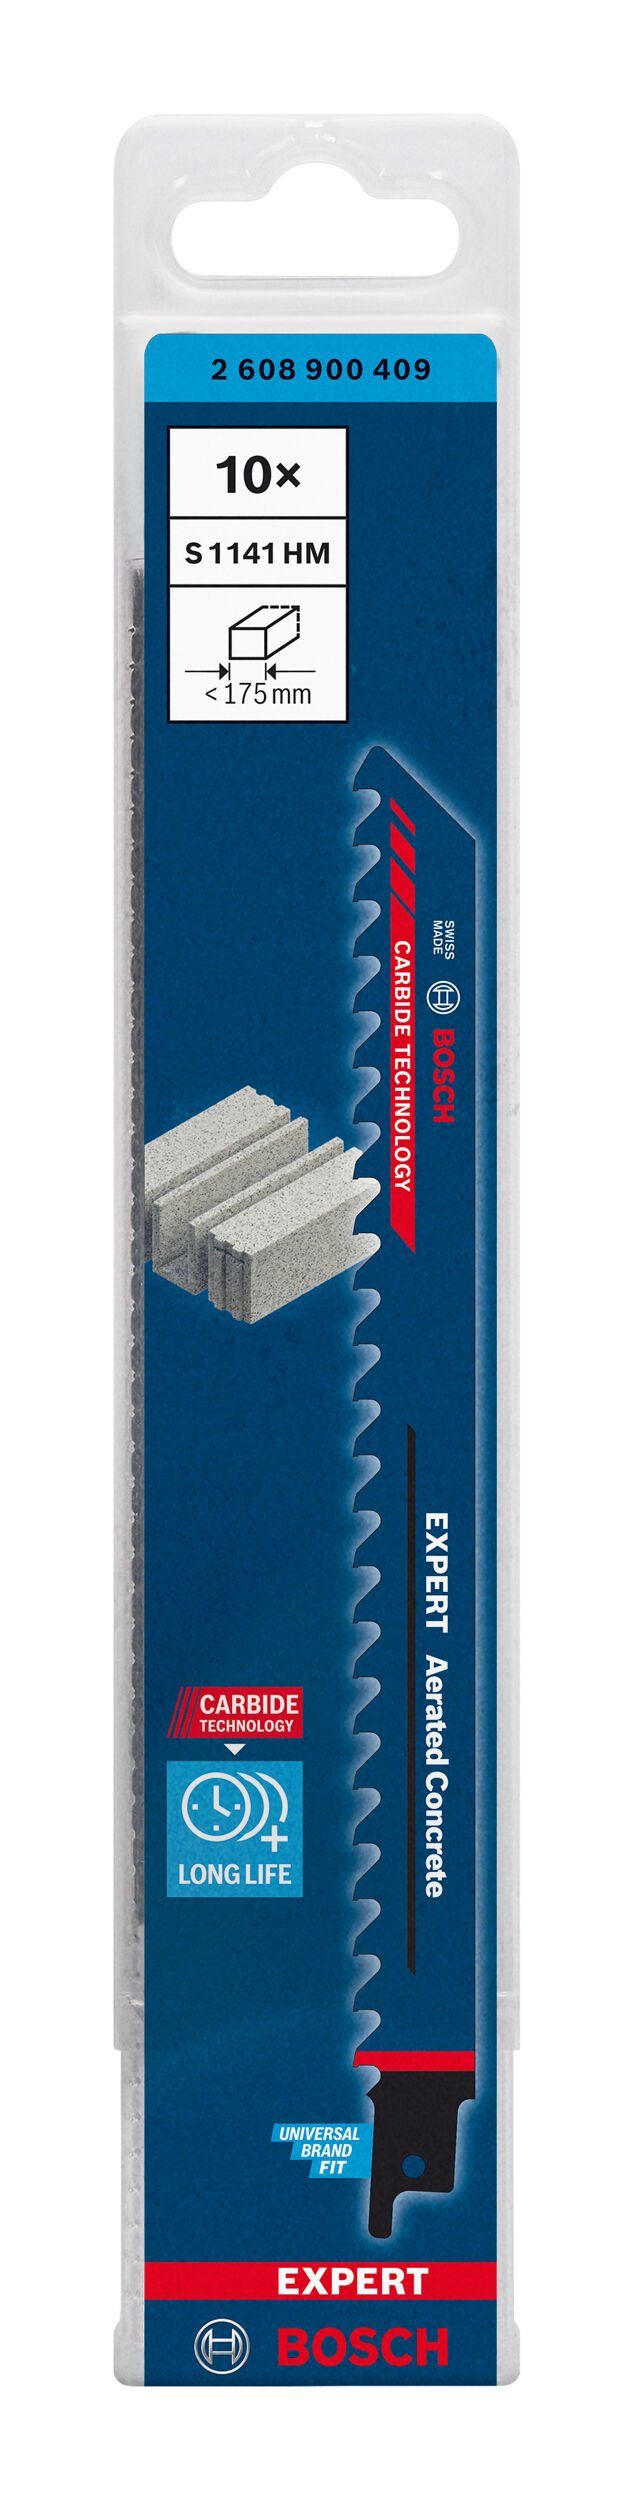 HM 1141 for AeratedConcrete S Säbelsägeblatt Stück), 10er-Pack Aerated BOSCH (10 Expert Concrete Expert - Endurance